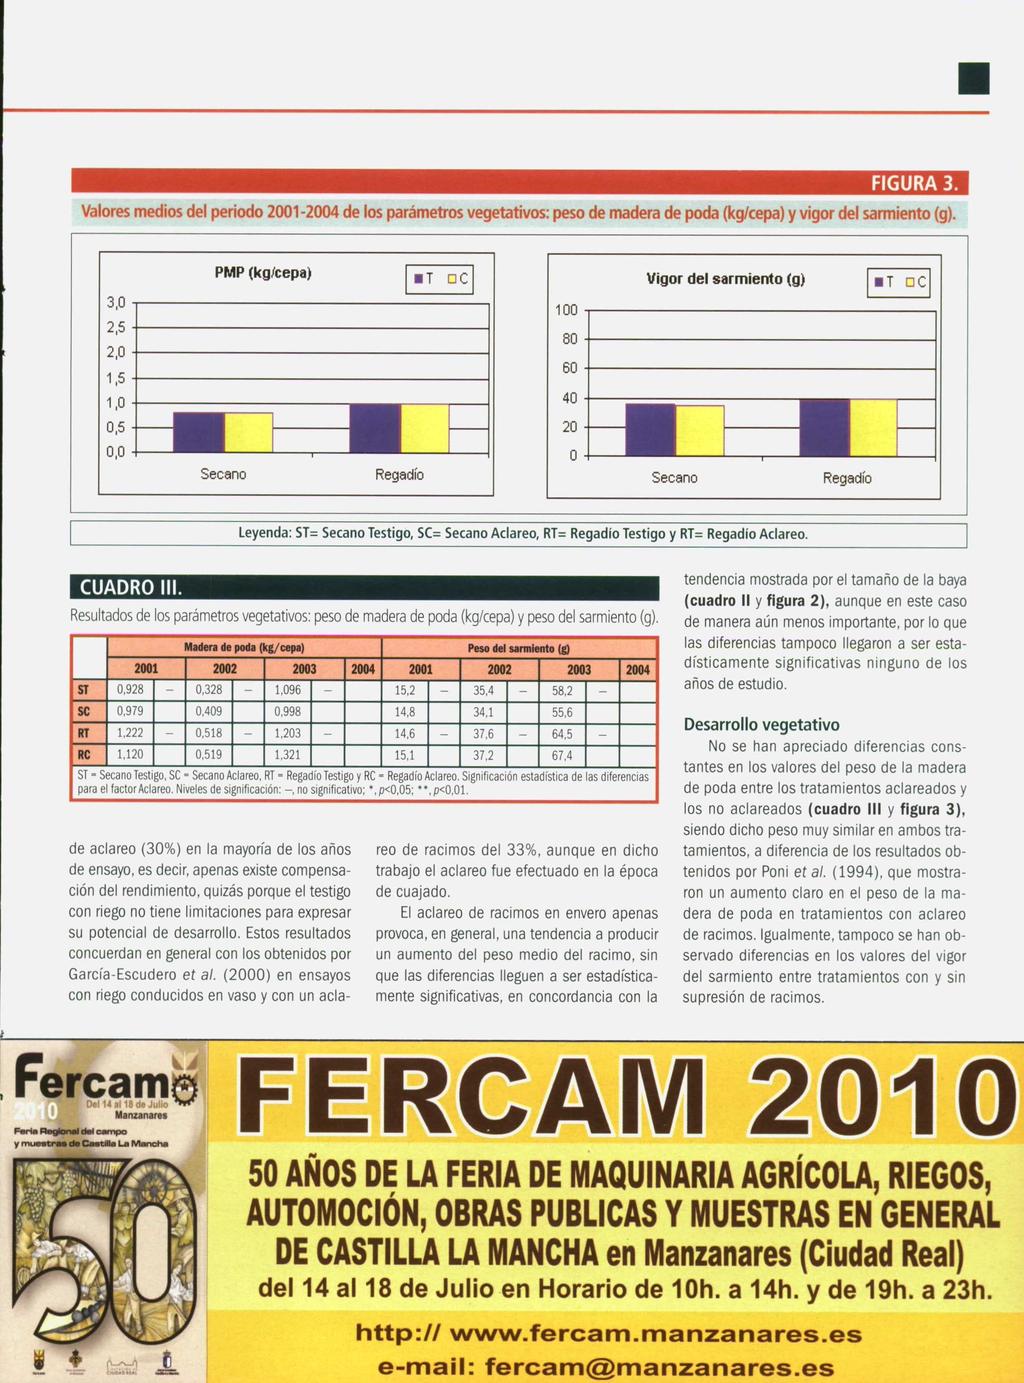 http:// www.fercam.manzanares.es e-mail: fercamemanzanares.es FIGURA 3. Valores medios del periodo 2001-2004 de los parámetros vegetativos: peso de madera de poda (kg/cepa) y vigor del sarmiento (g).